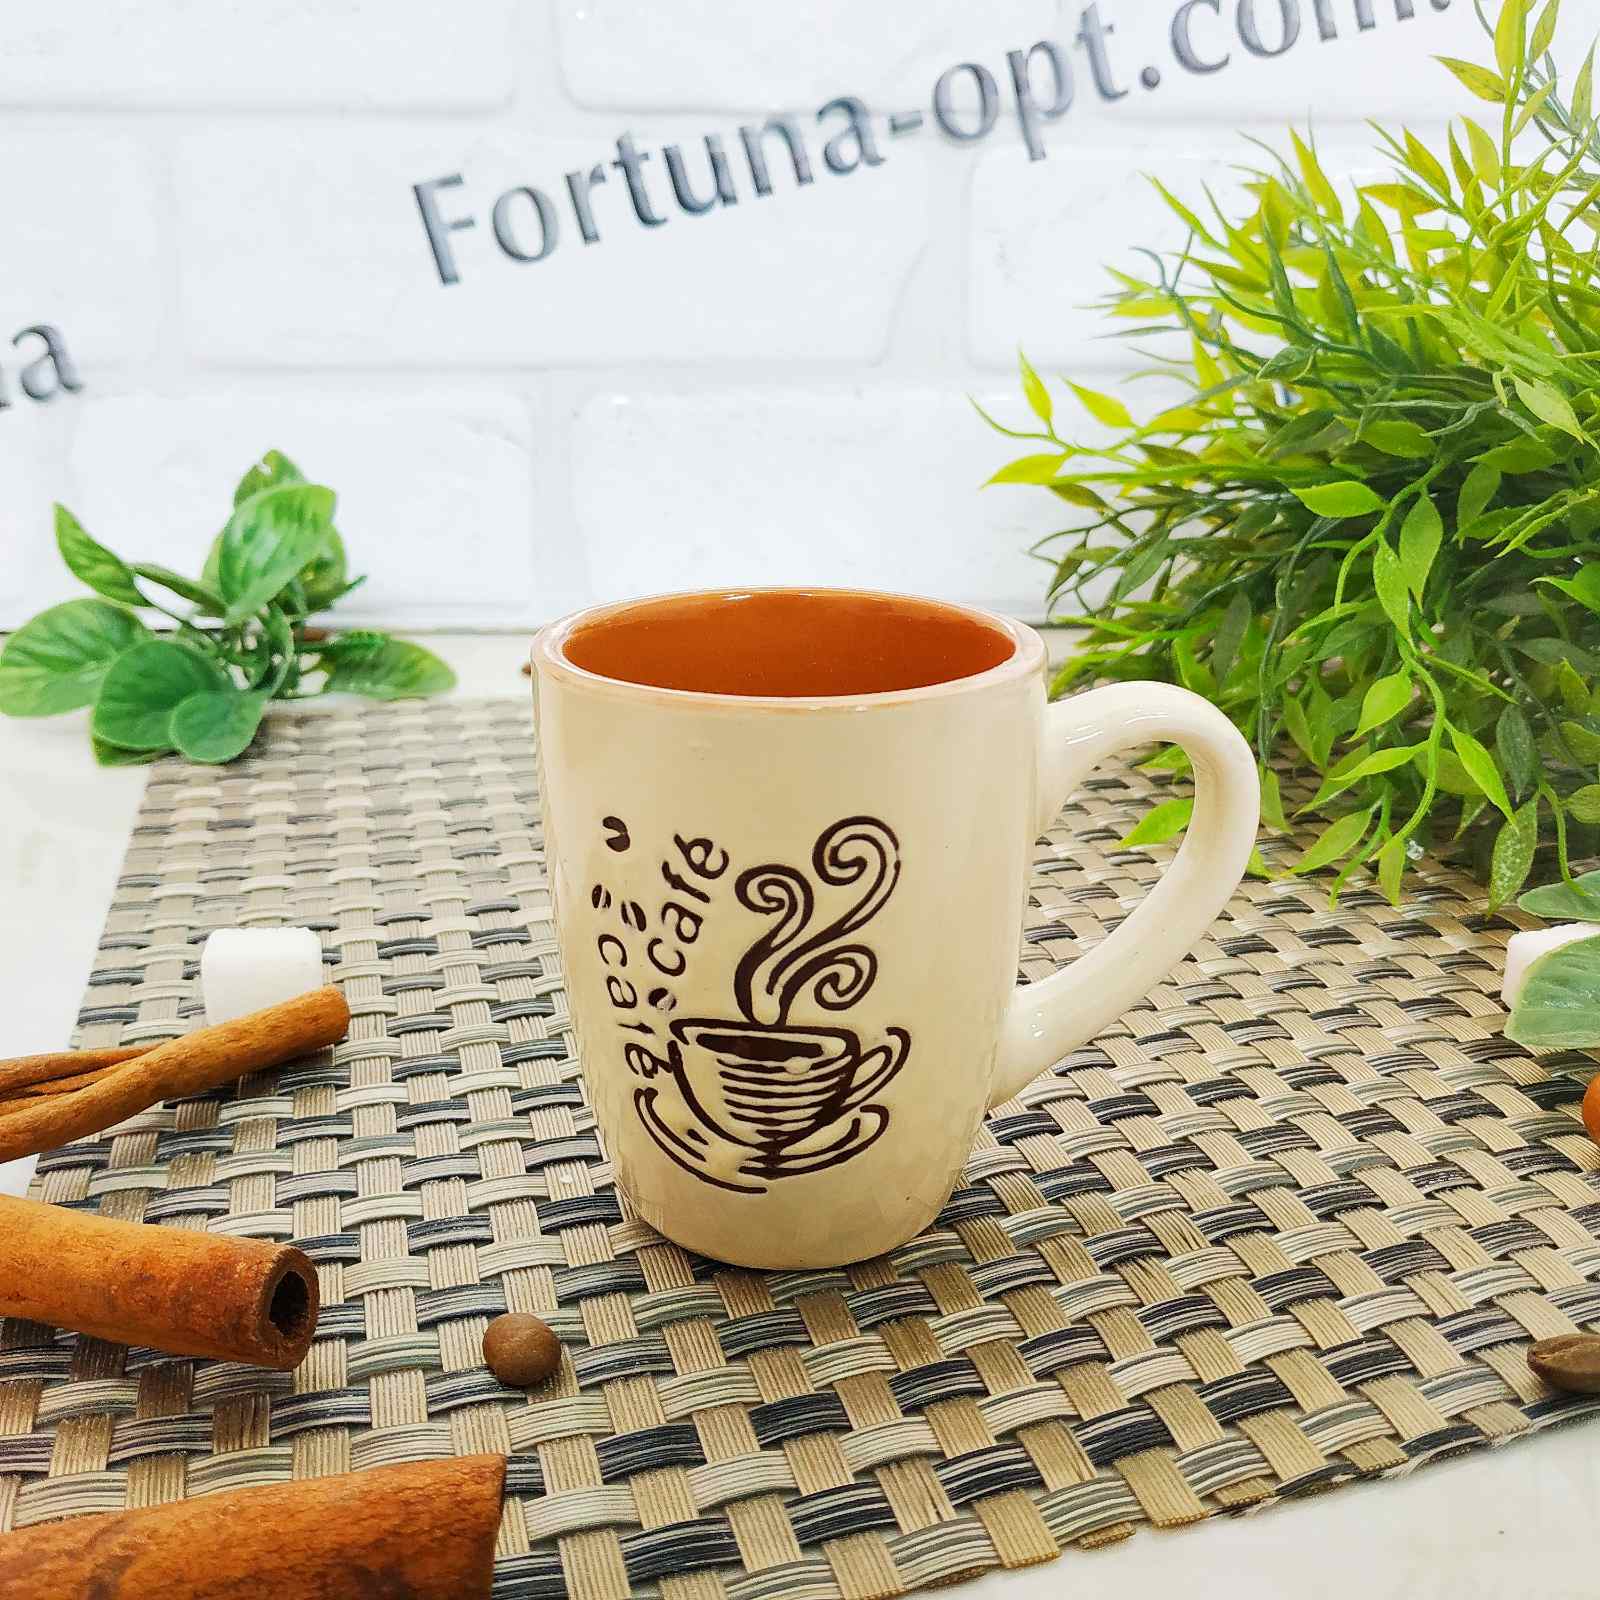 Чашка кофе 100 мл "Кафе" керамика 13653-00 ✅ базовая цена 18.20 грн. ✔ Опт ✔ Скидки ✔ Заходите! - Интернет-магазин ✅ Фортуна-опт ✅